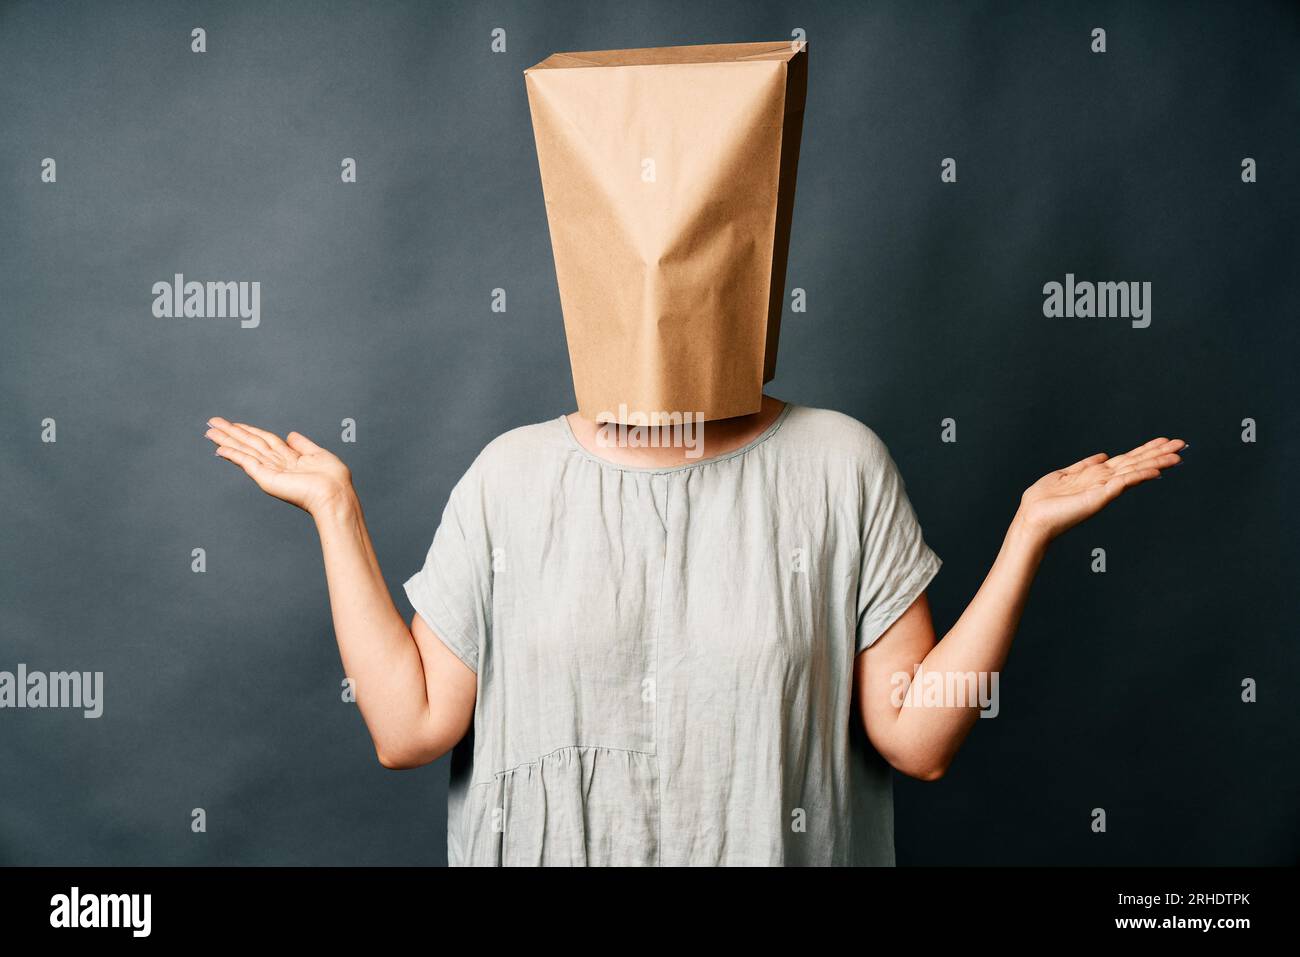 Femme confuse avec sac en papier au-dessus de la tête sur fond sombre. Concept d'émotions Banque D'Images